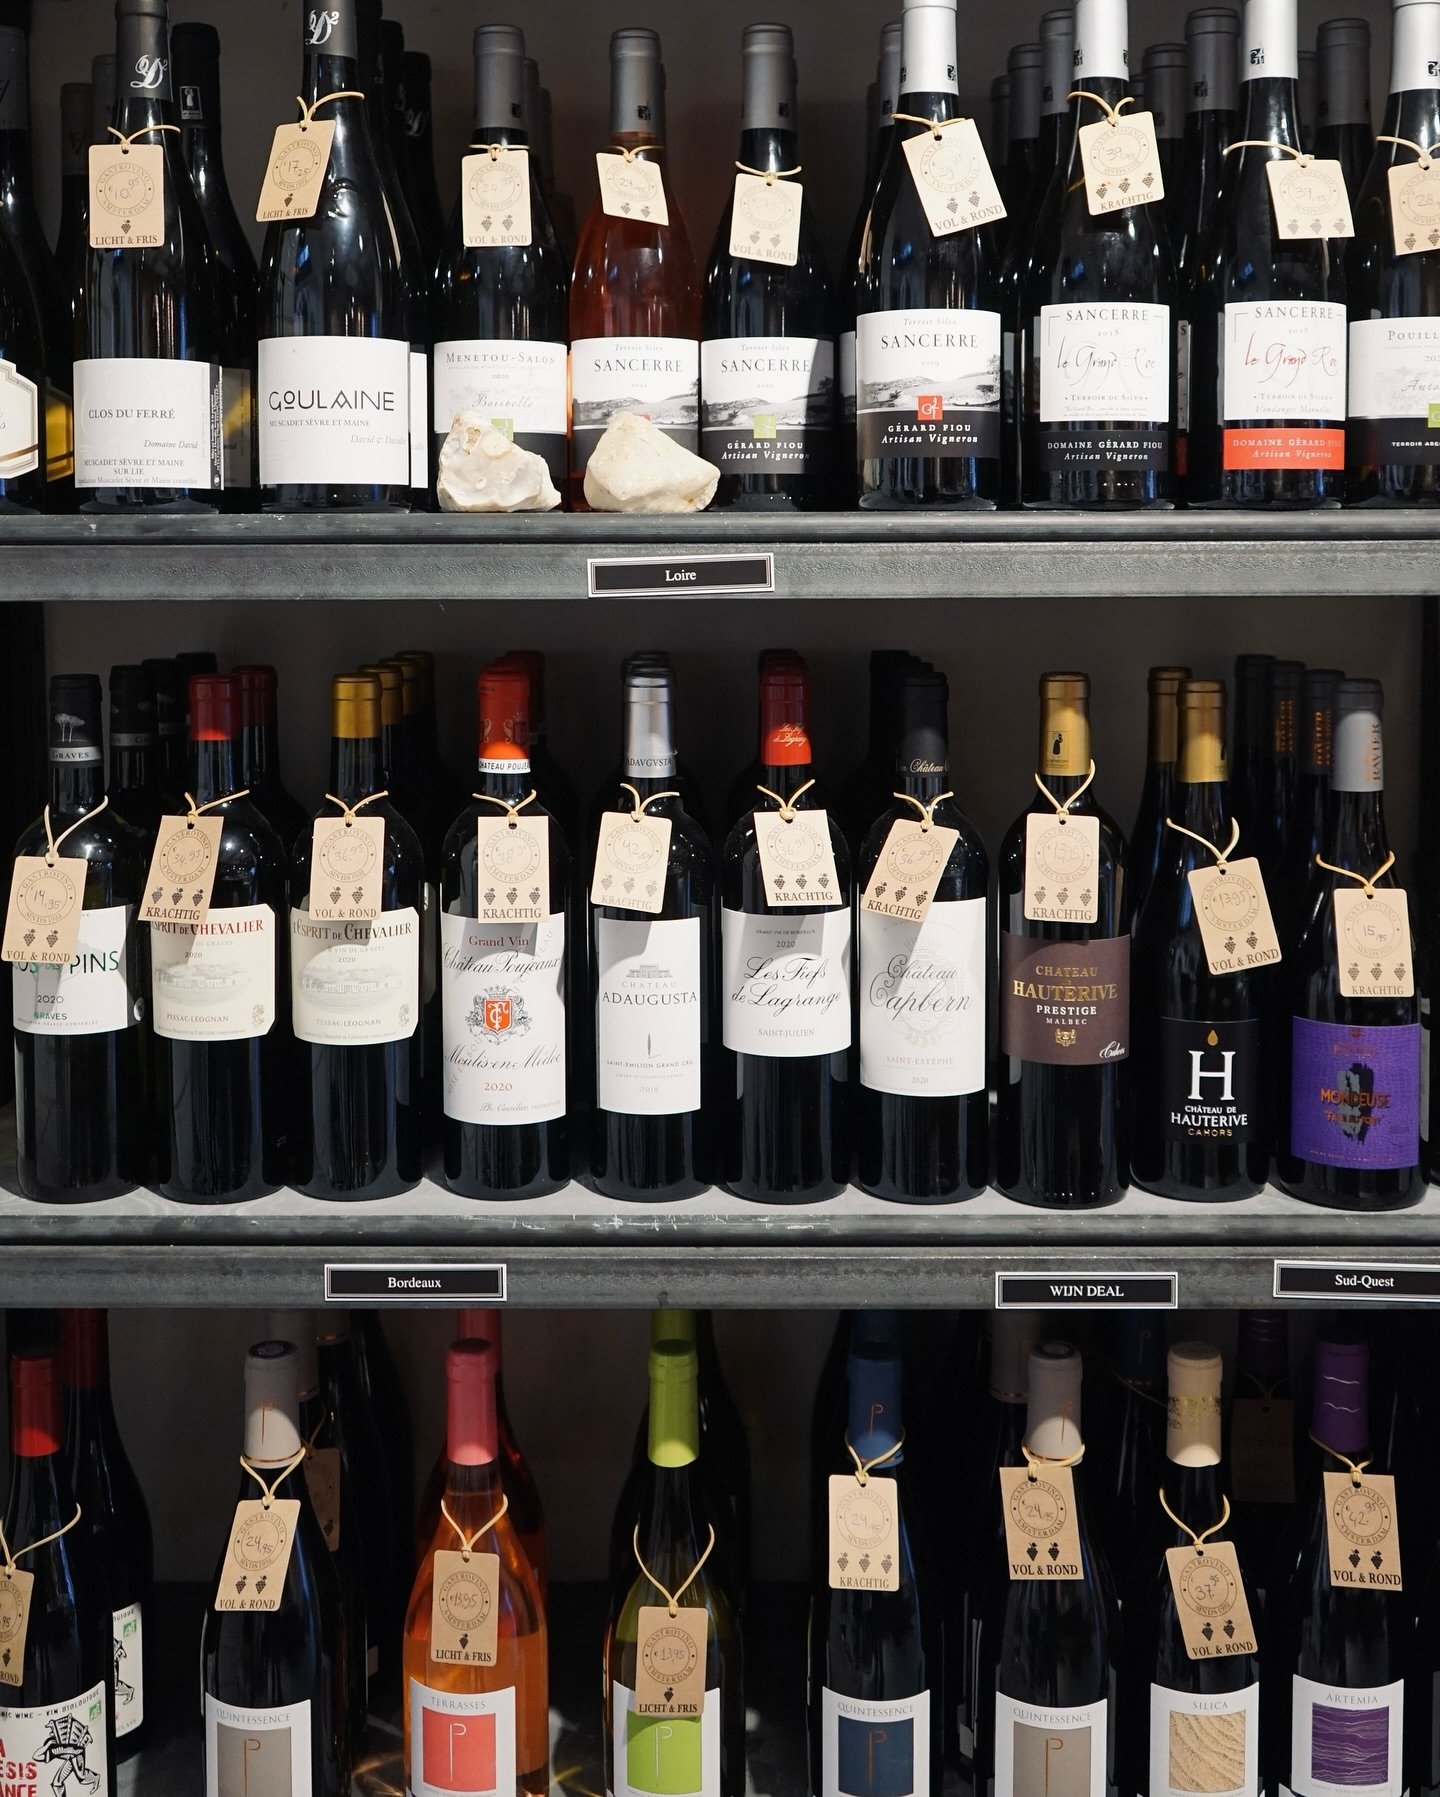 Wist je dat ons wijnassortiment inmiddels al uit meer dan 250 wijnen bestaat? Uit alle werelddelen en in iedere prijsklasse. Ontdek onze uitgebreide selectie en vind de perfecte fles voor elke gelegenheid! 🍷

📍Spuistraat 330, Amsterdam 

#kaaswinke